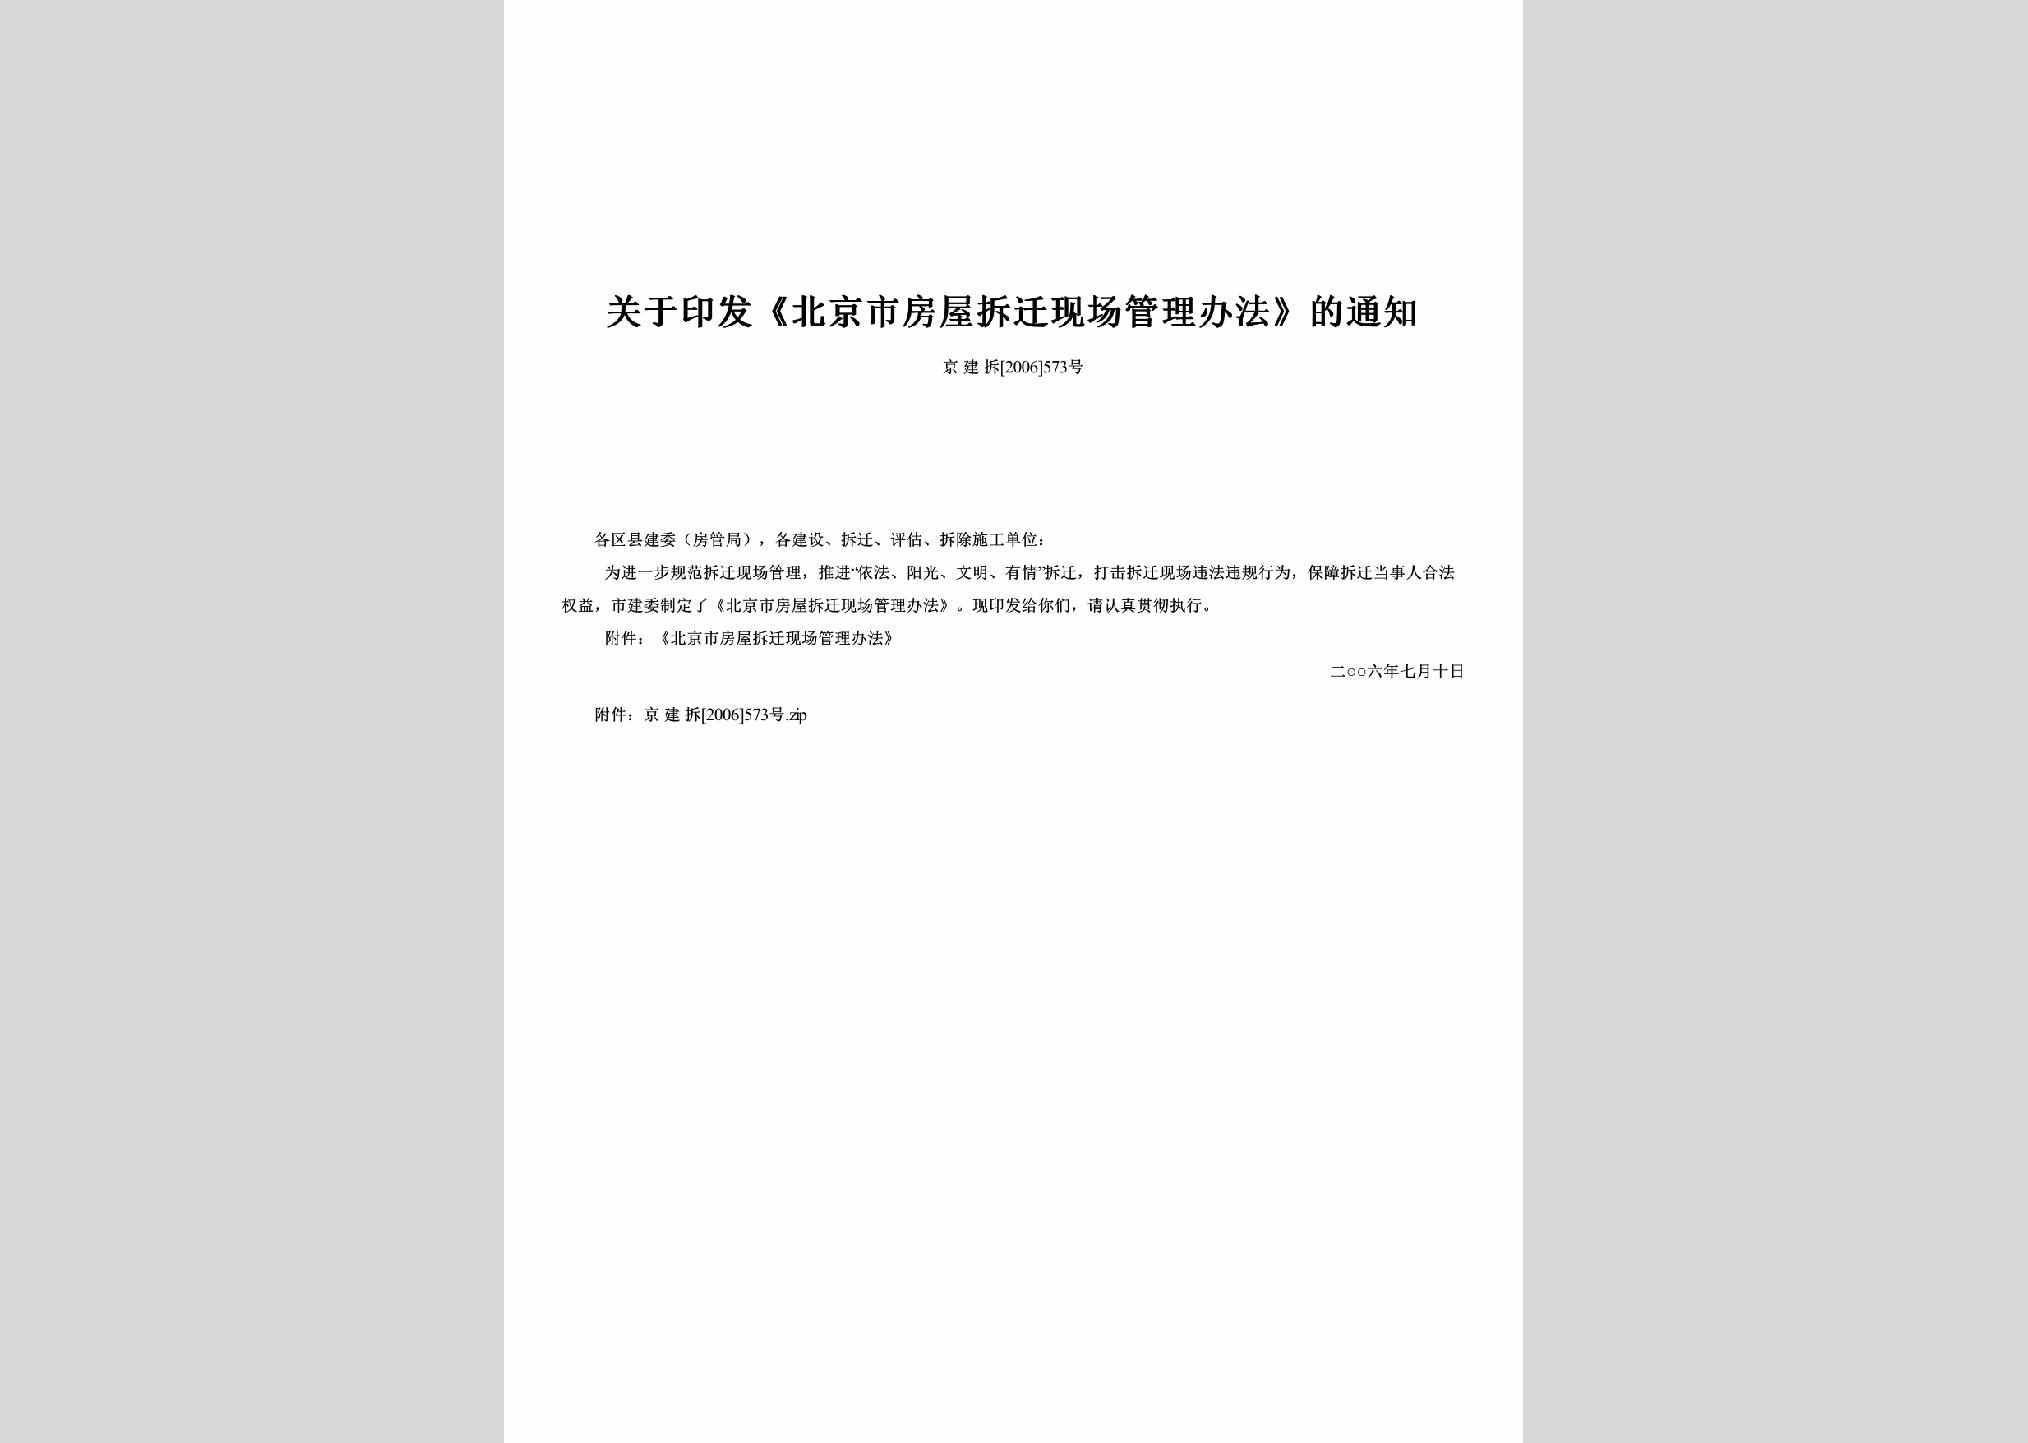 京建拆[2006]573号：关于印发《北京市房屋拆迁现场管理办法》的通知